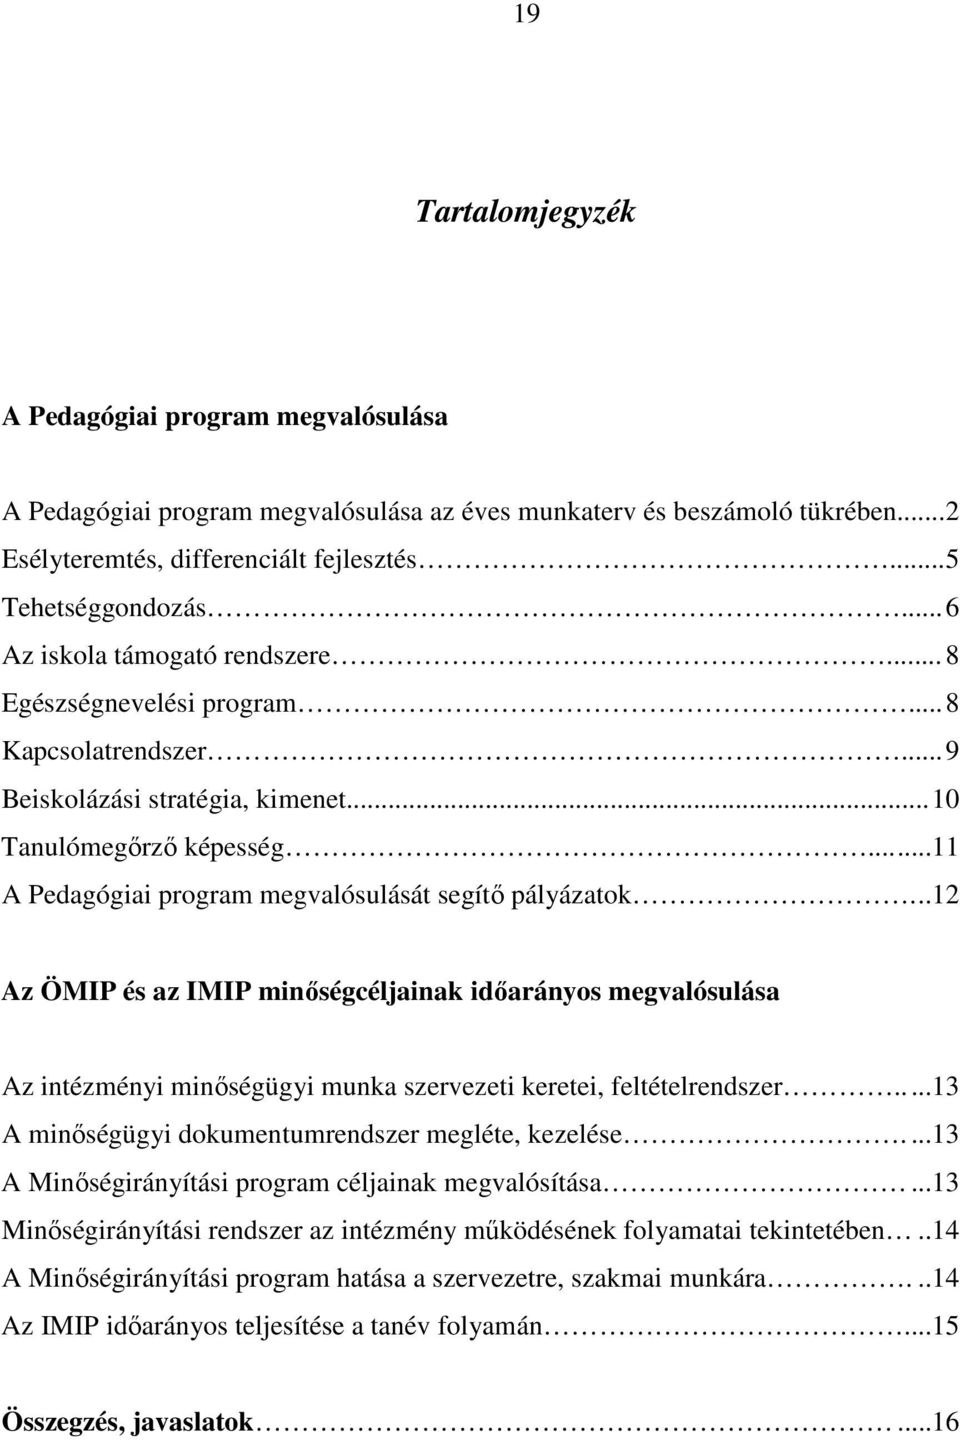 .....11 A Pedagógiai program megvalósulását segítı pályázatok...12 Az ÖMIP és az IMIP minıségcéljainak idıarányos megvalósulása Az intézményi minıségügyi munka szervezeti keretei, feltételrendszer.